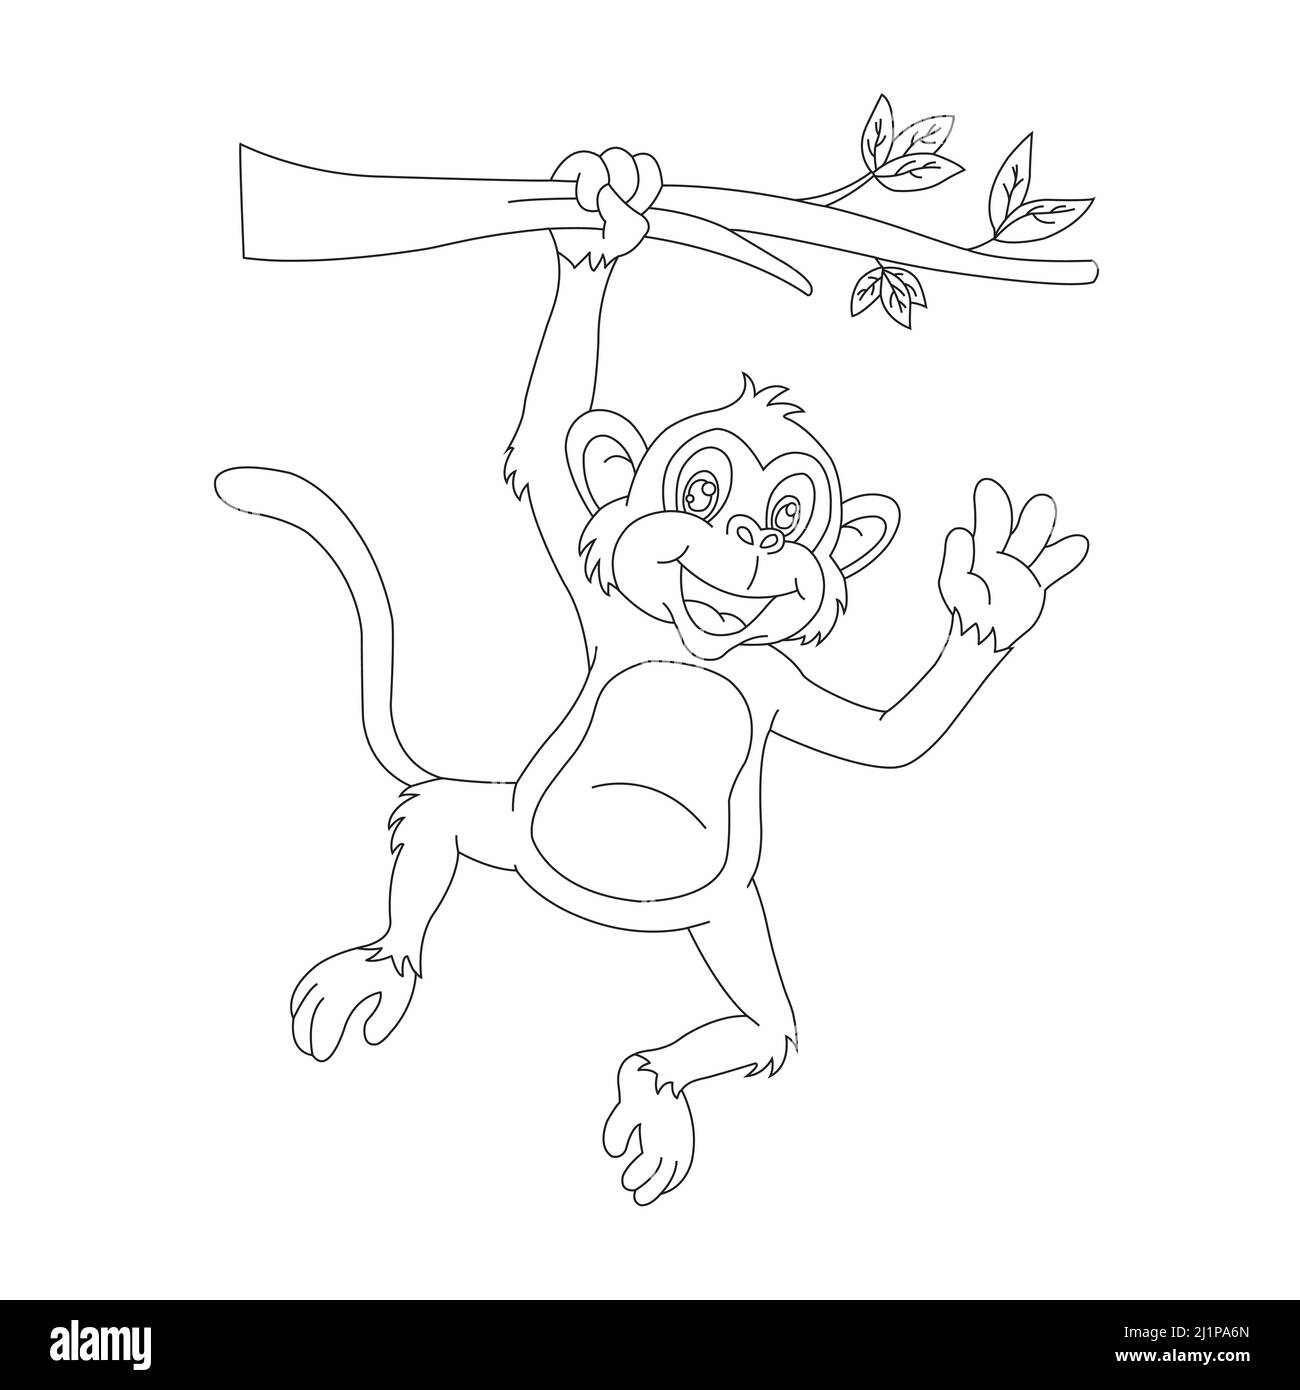 draw monkey｜TikTok Search